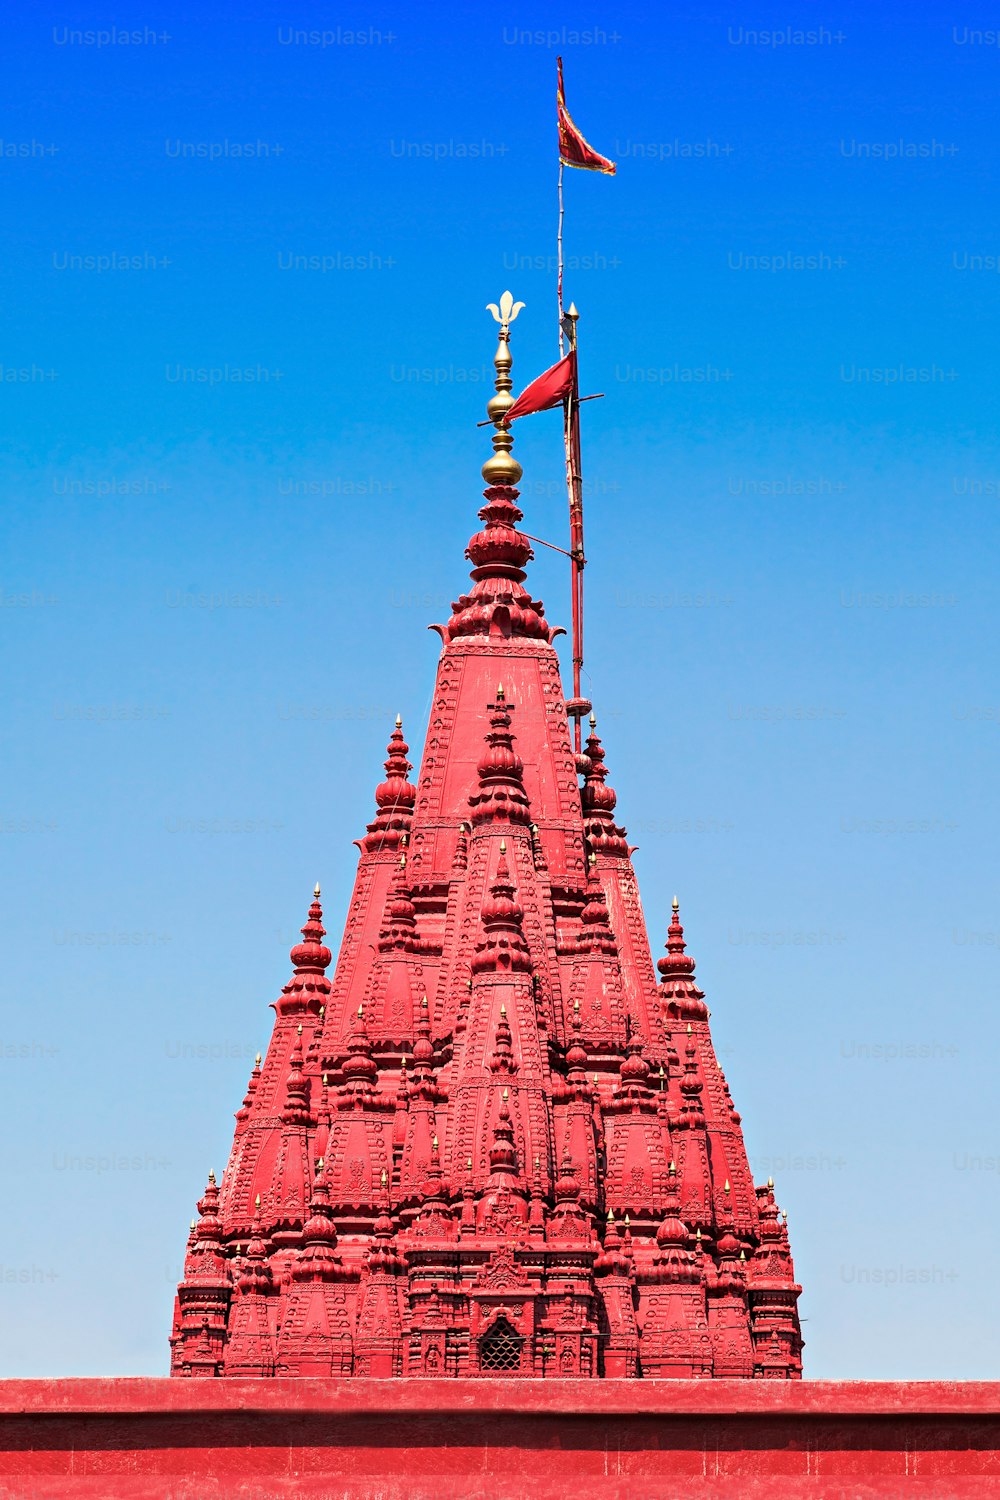 Templo de Durga (Macaco) vermelho em Varanasi, Índia